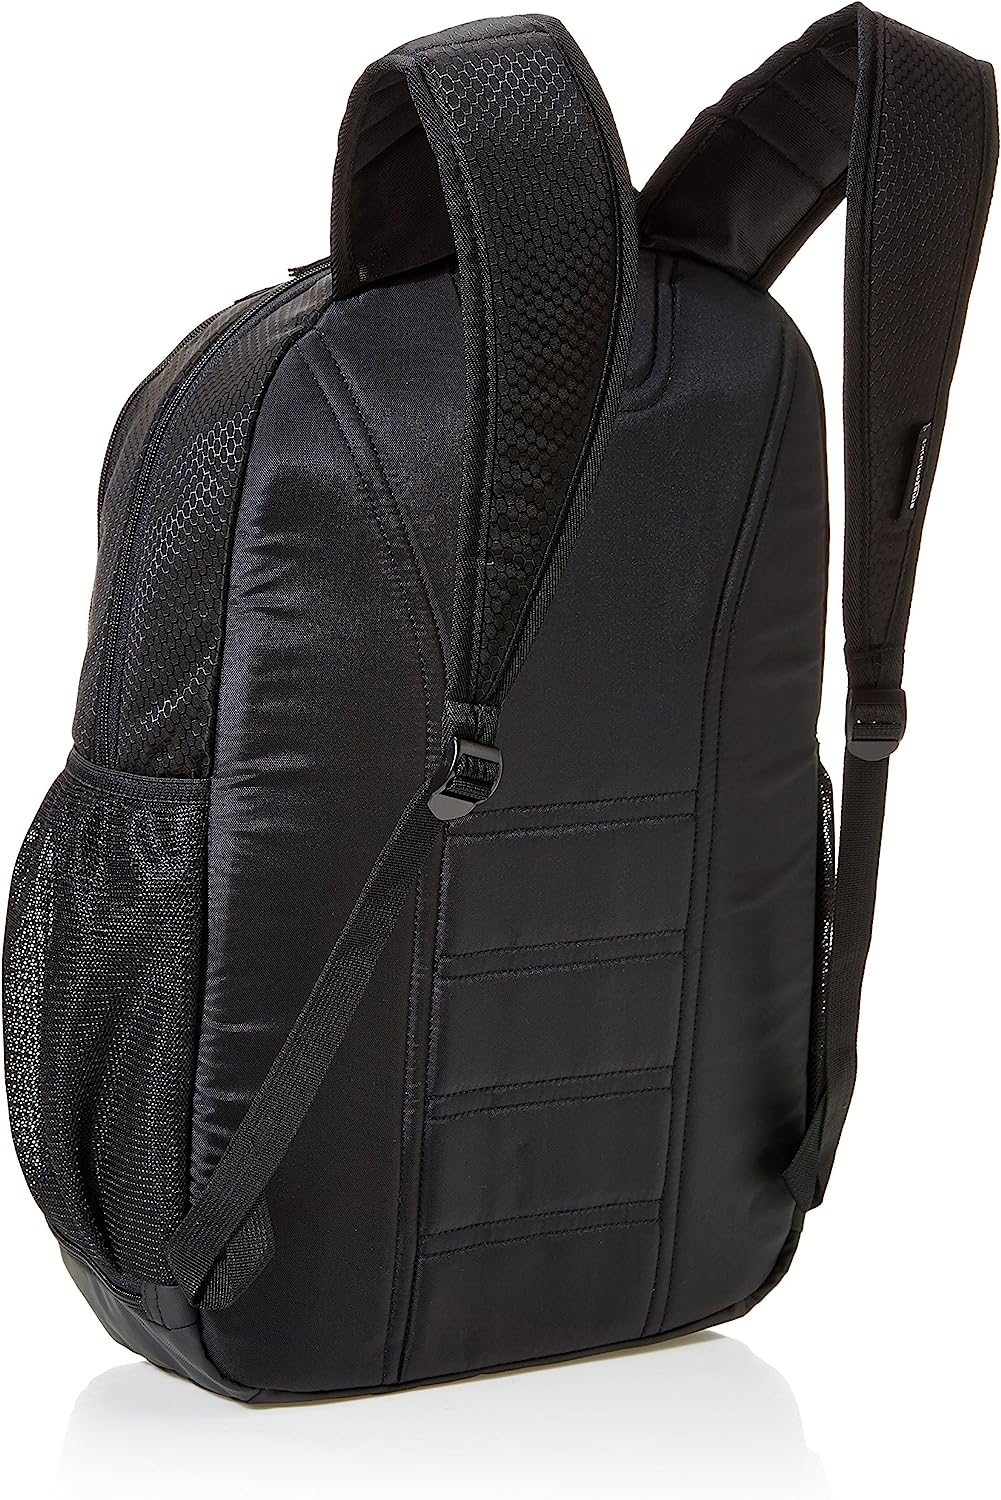 Amazon Basics 15" Laptop Backpack - Black